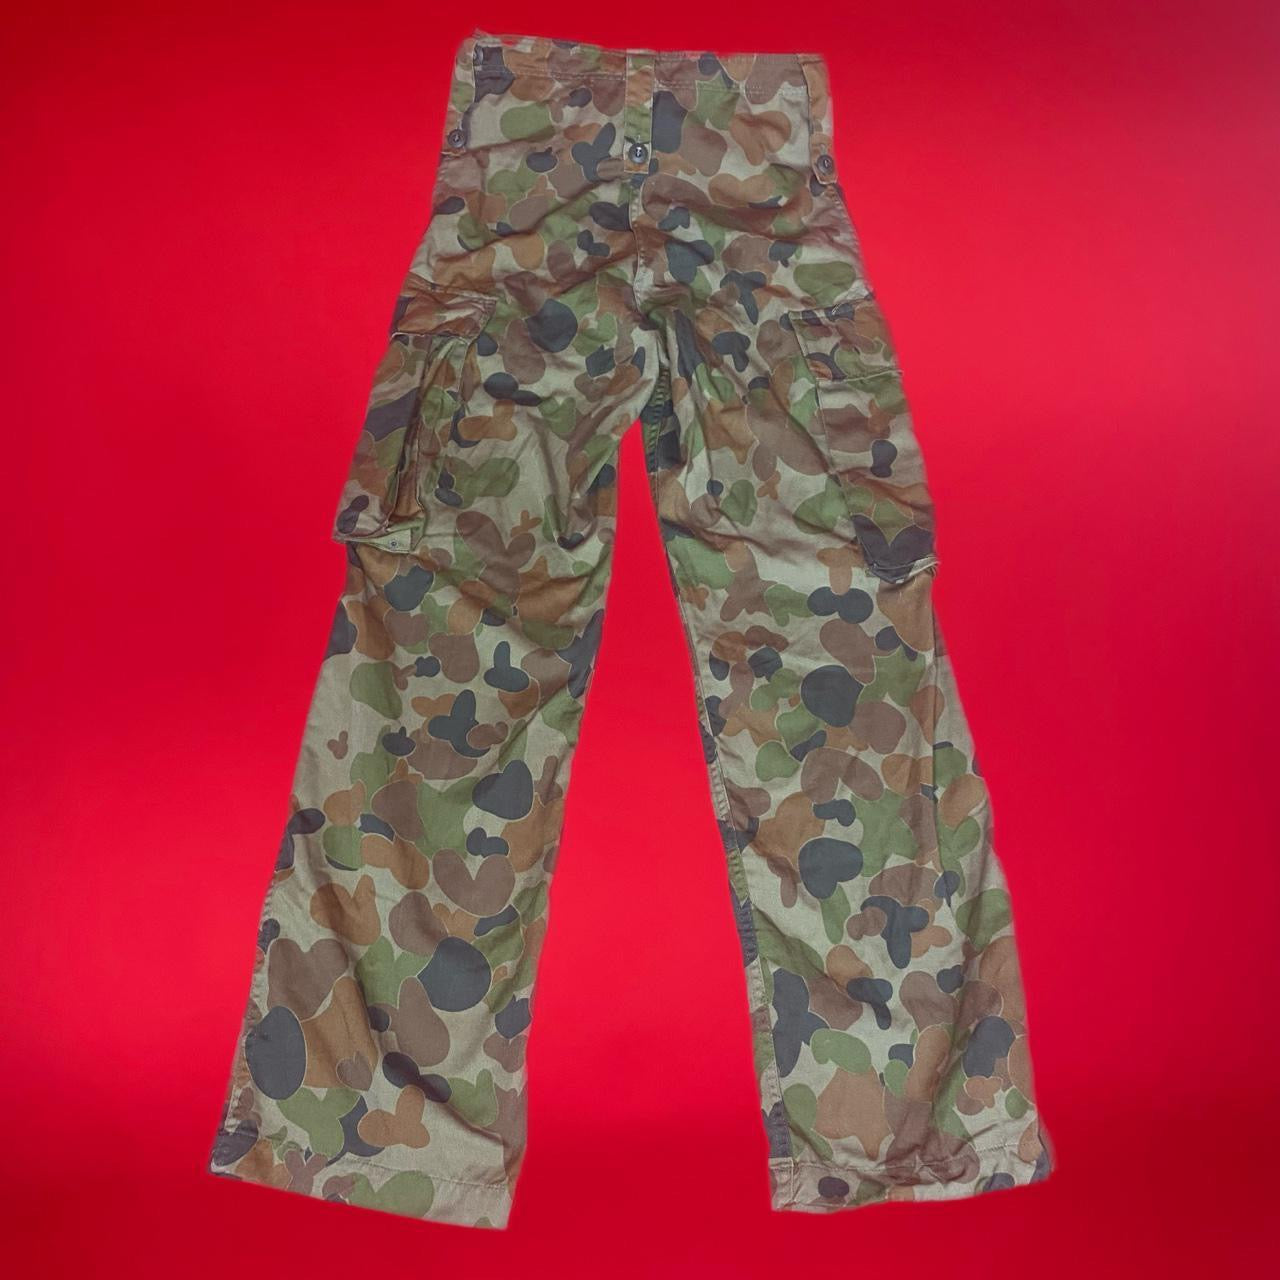 Vintage combat camo pants